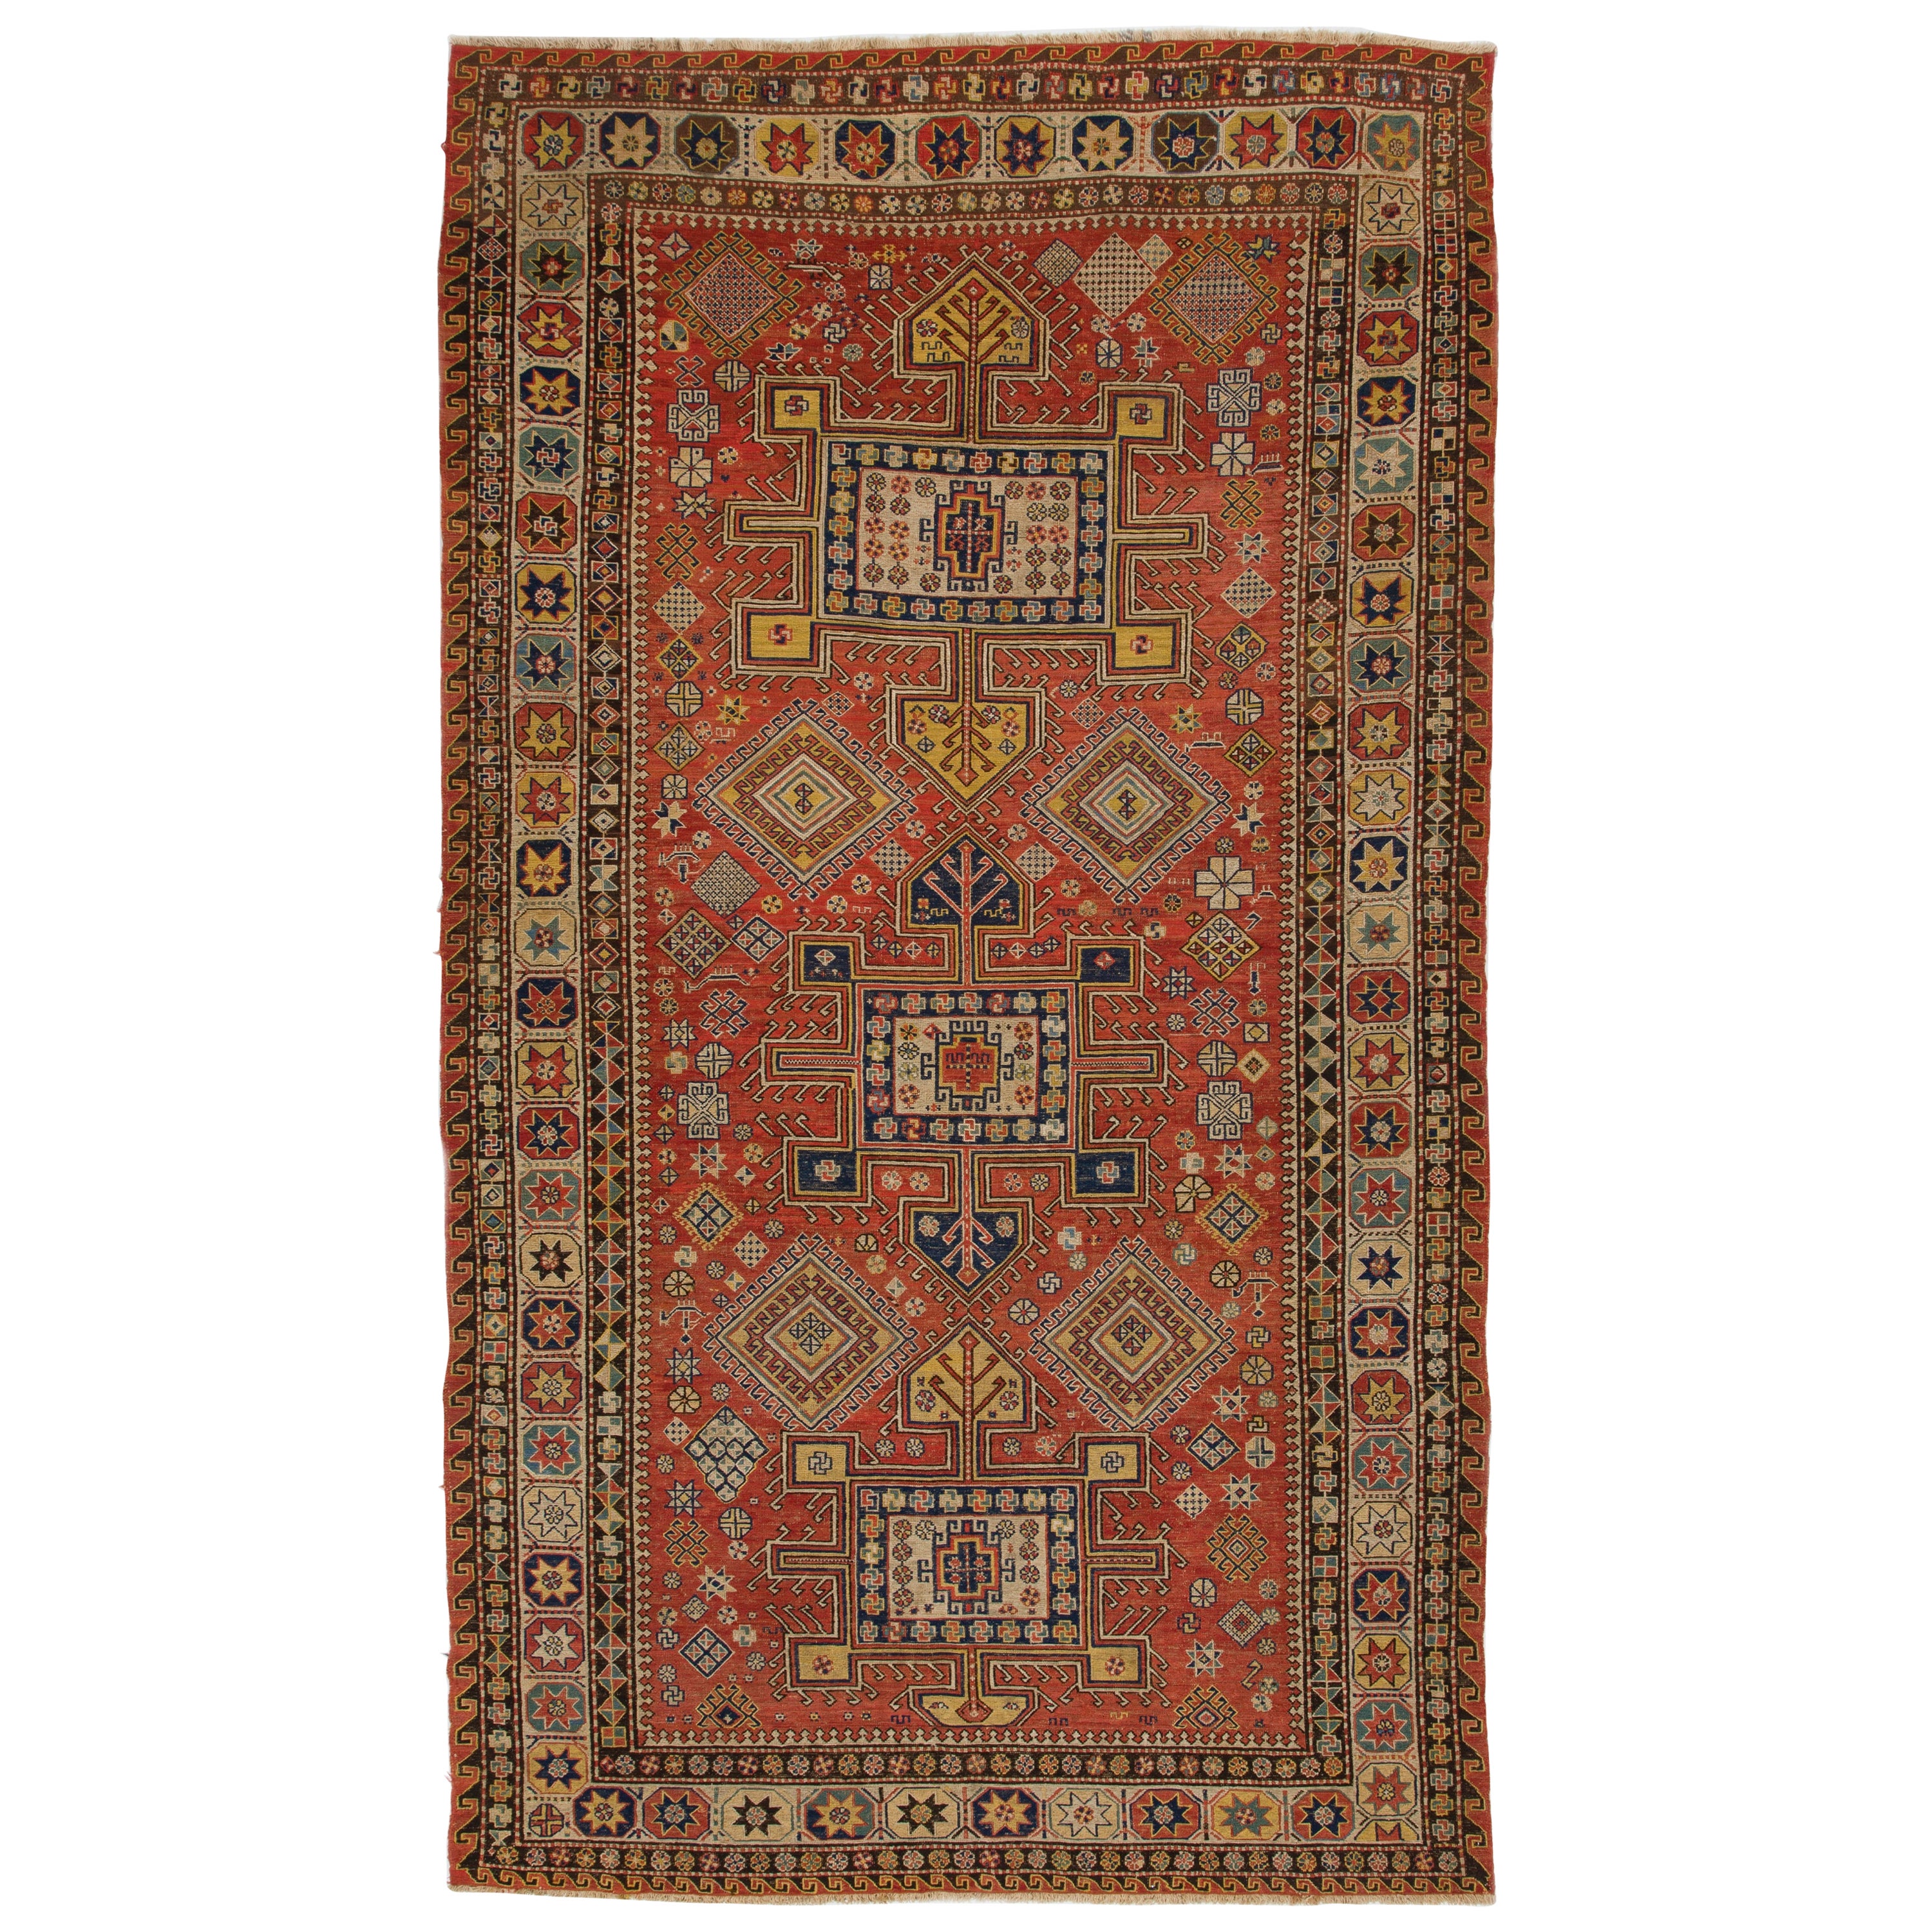 5.7x10 ft Antique Caucasian Konaghend Soumak Rug, circa 1875, Collectors Carpet For Sale